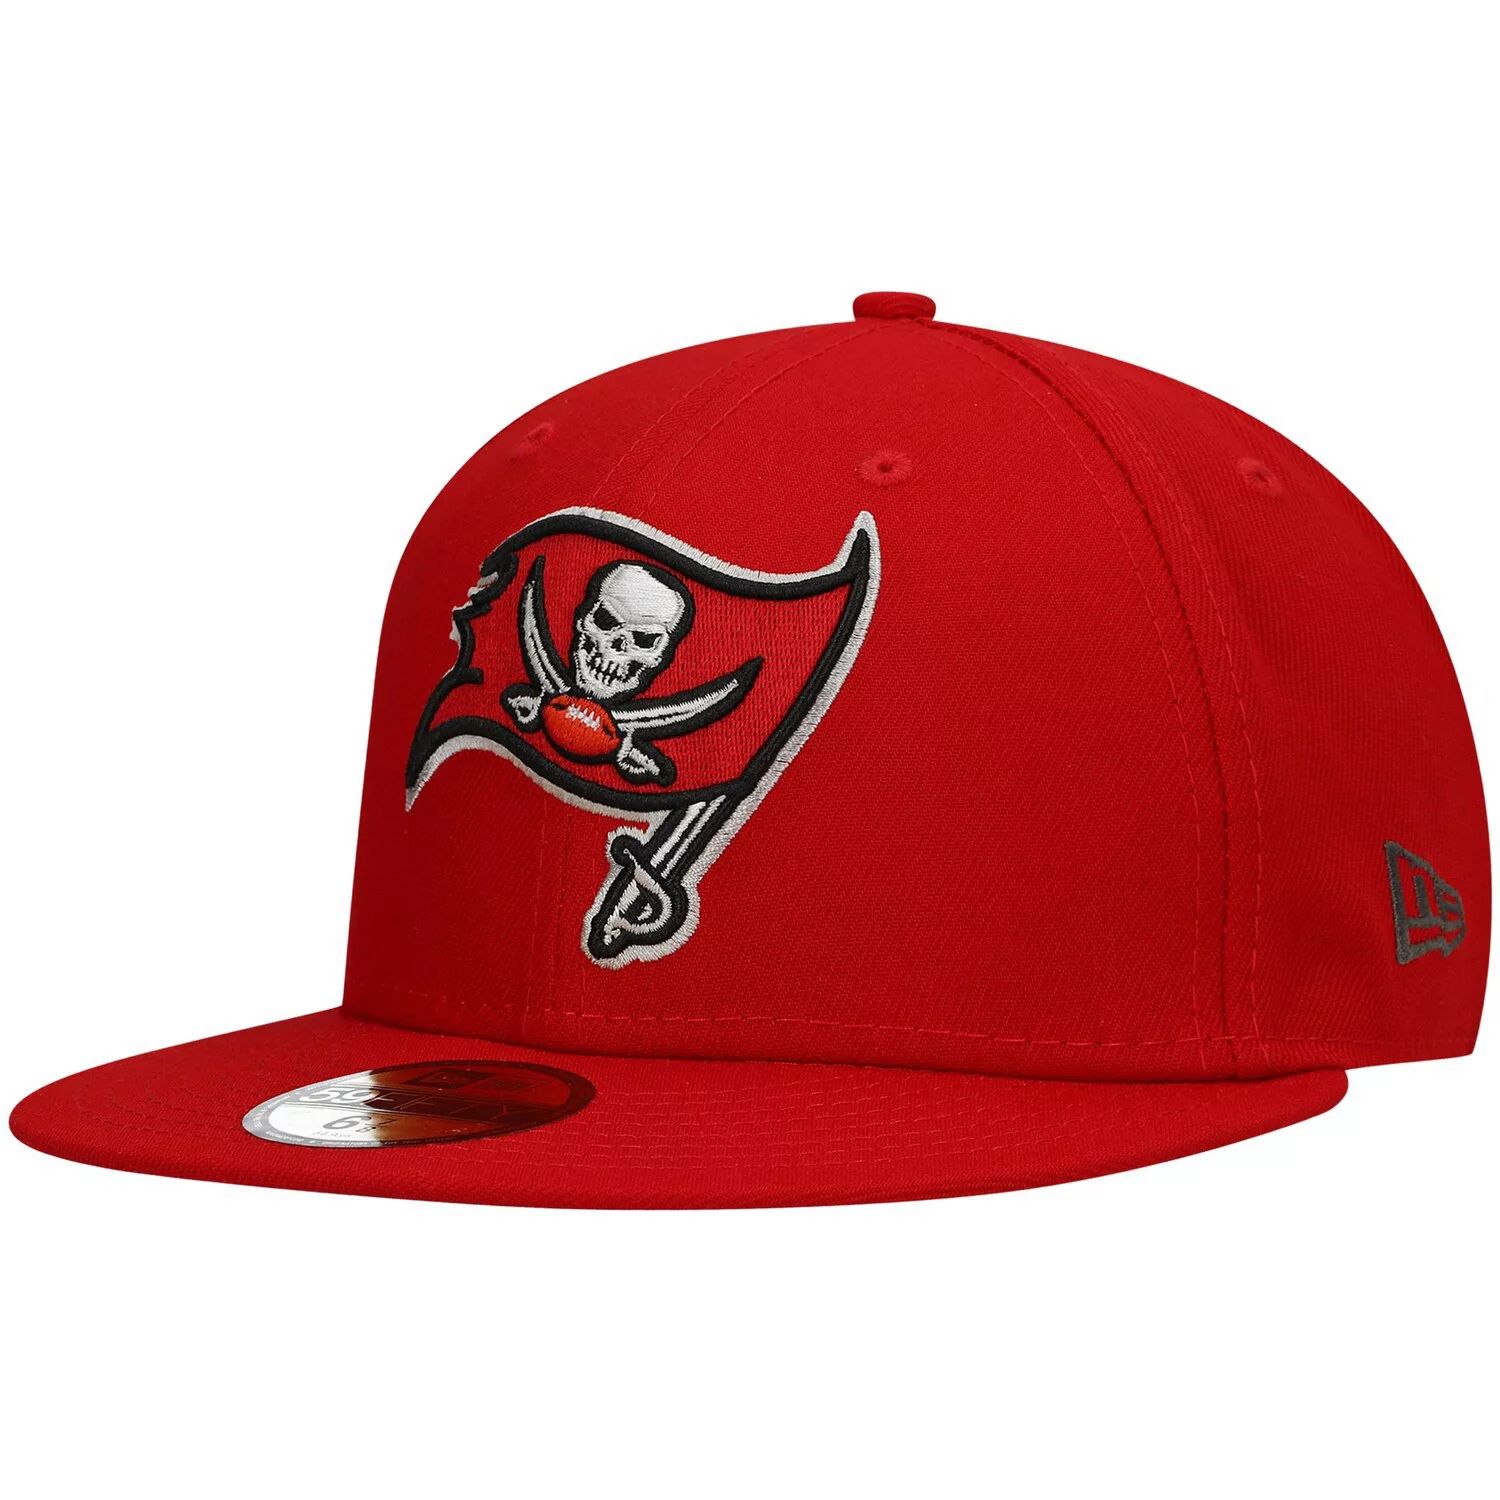 бейсболка 59fifty spill logo nfl teams new era цвет tampa bay buccaneers Мужская облегающая шляпа New Era Red Tampa Bay Buccaneers Team Basic 59FIFTY